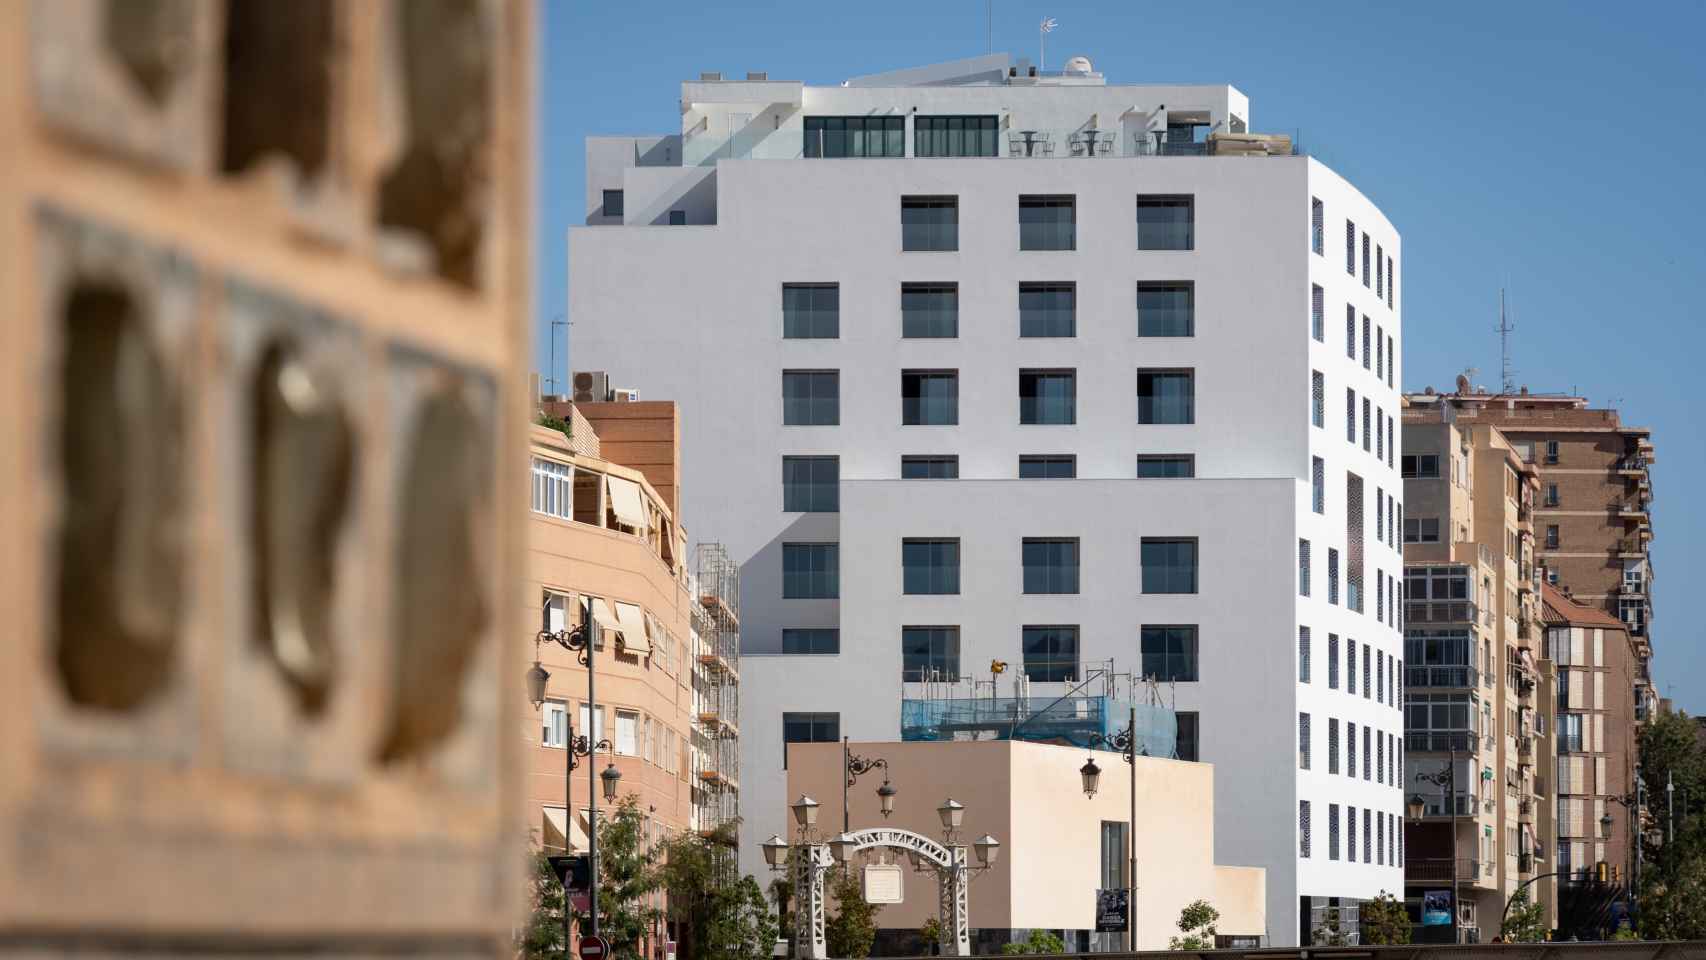 Imagen del hotel diseñado por Rafael Moneo en Málaga.